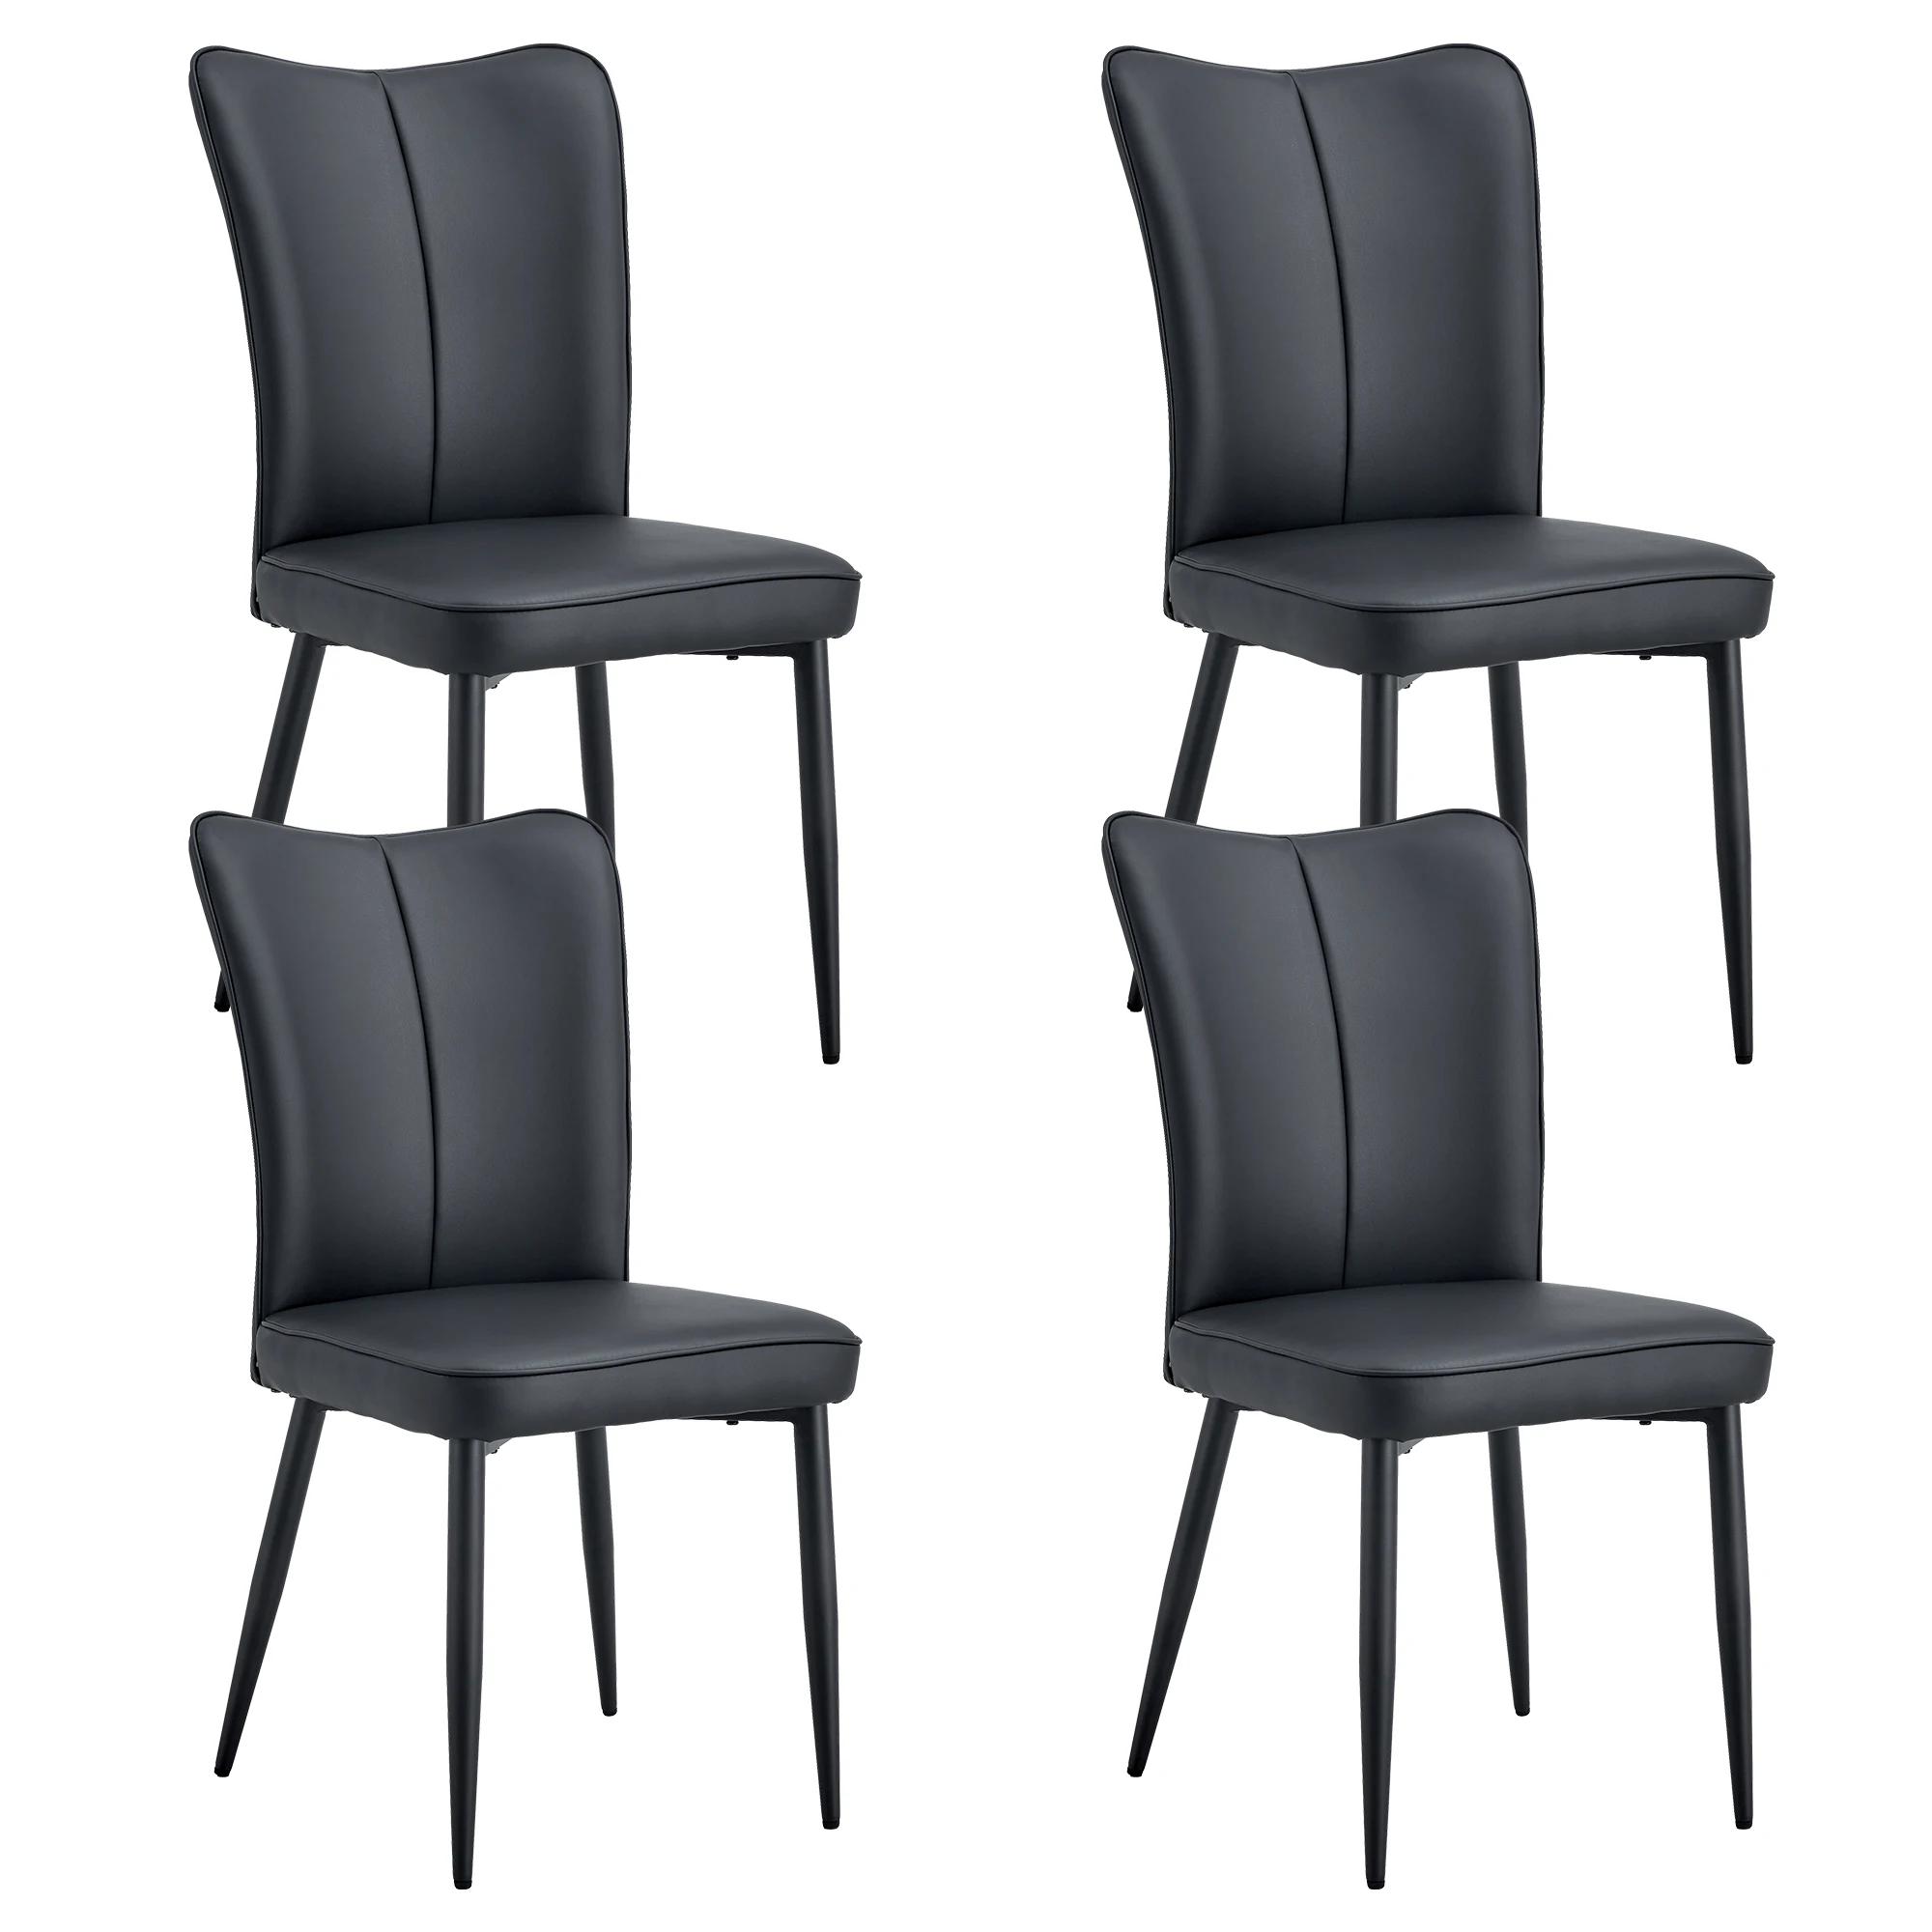 Современные обеденные стулья в минималистичном стиле, изогнутые спинка и подушки сидений из черной искусственной кожи, ножки стульев из черного металла. Набор из четырех